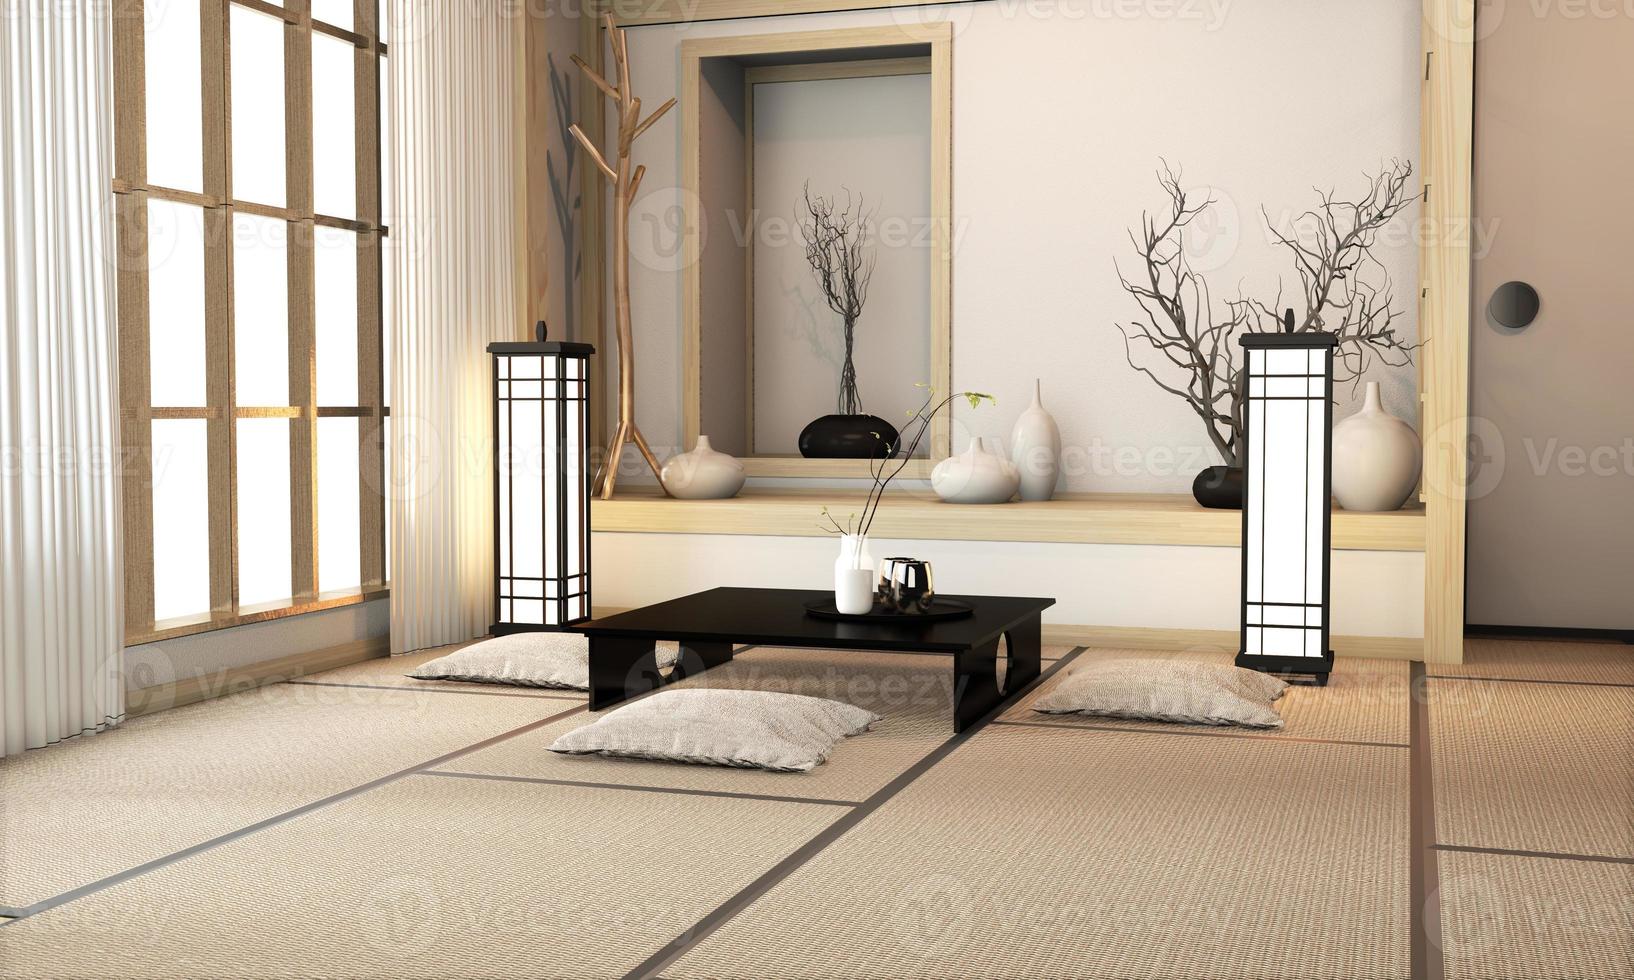 sala de estar ryokan em estilo japonês com piso de tatame e decoração. Renderização 3D foto